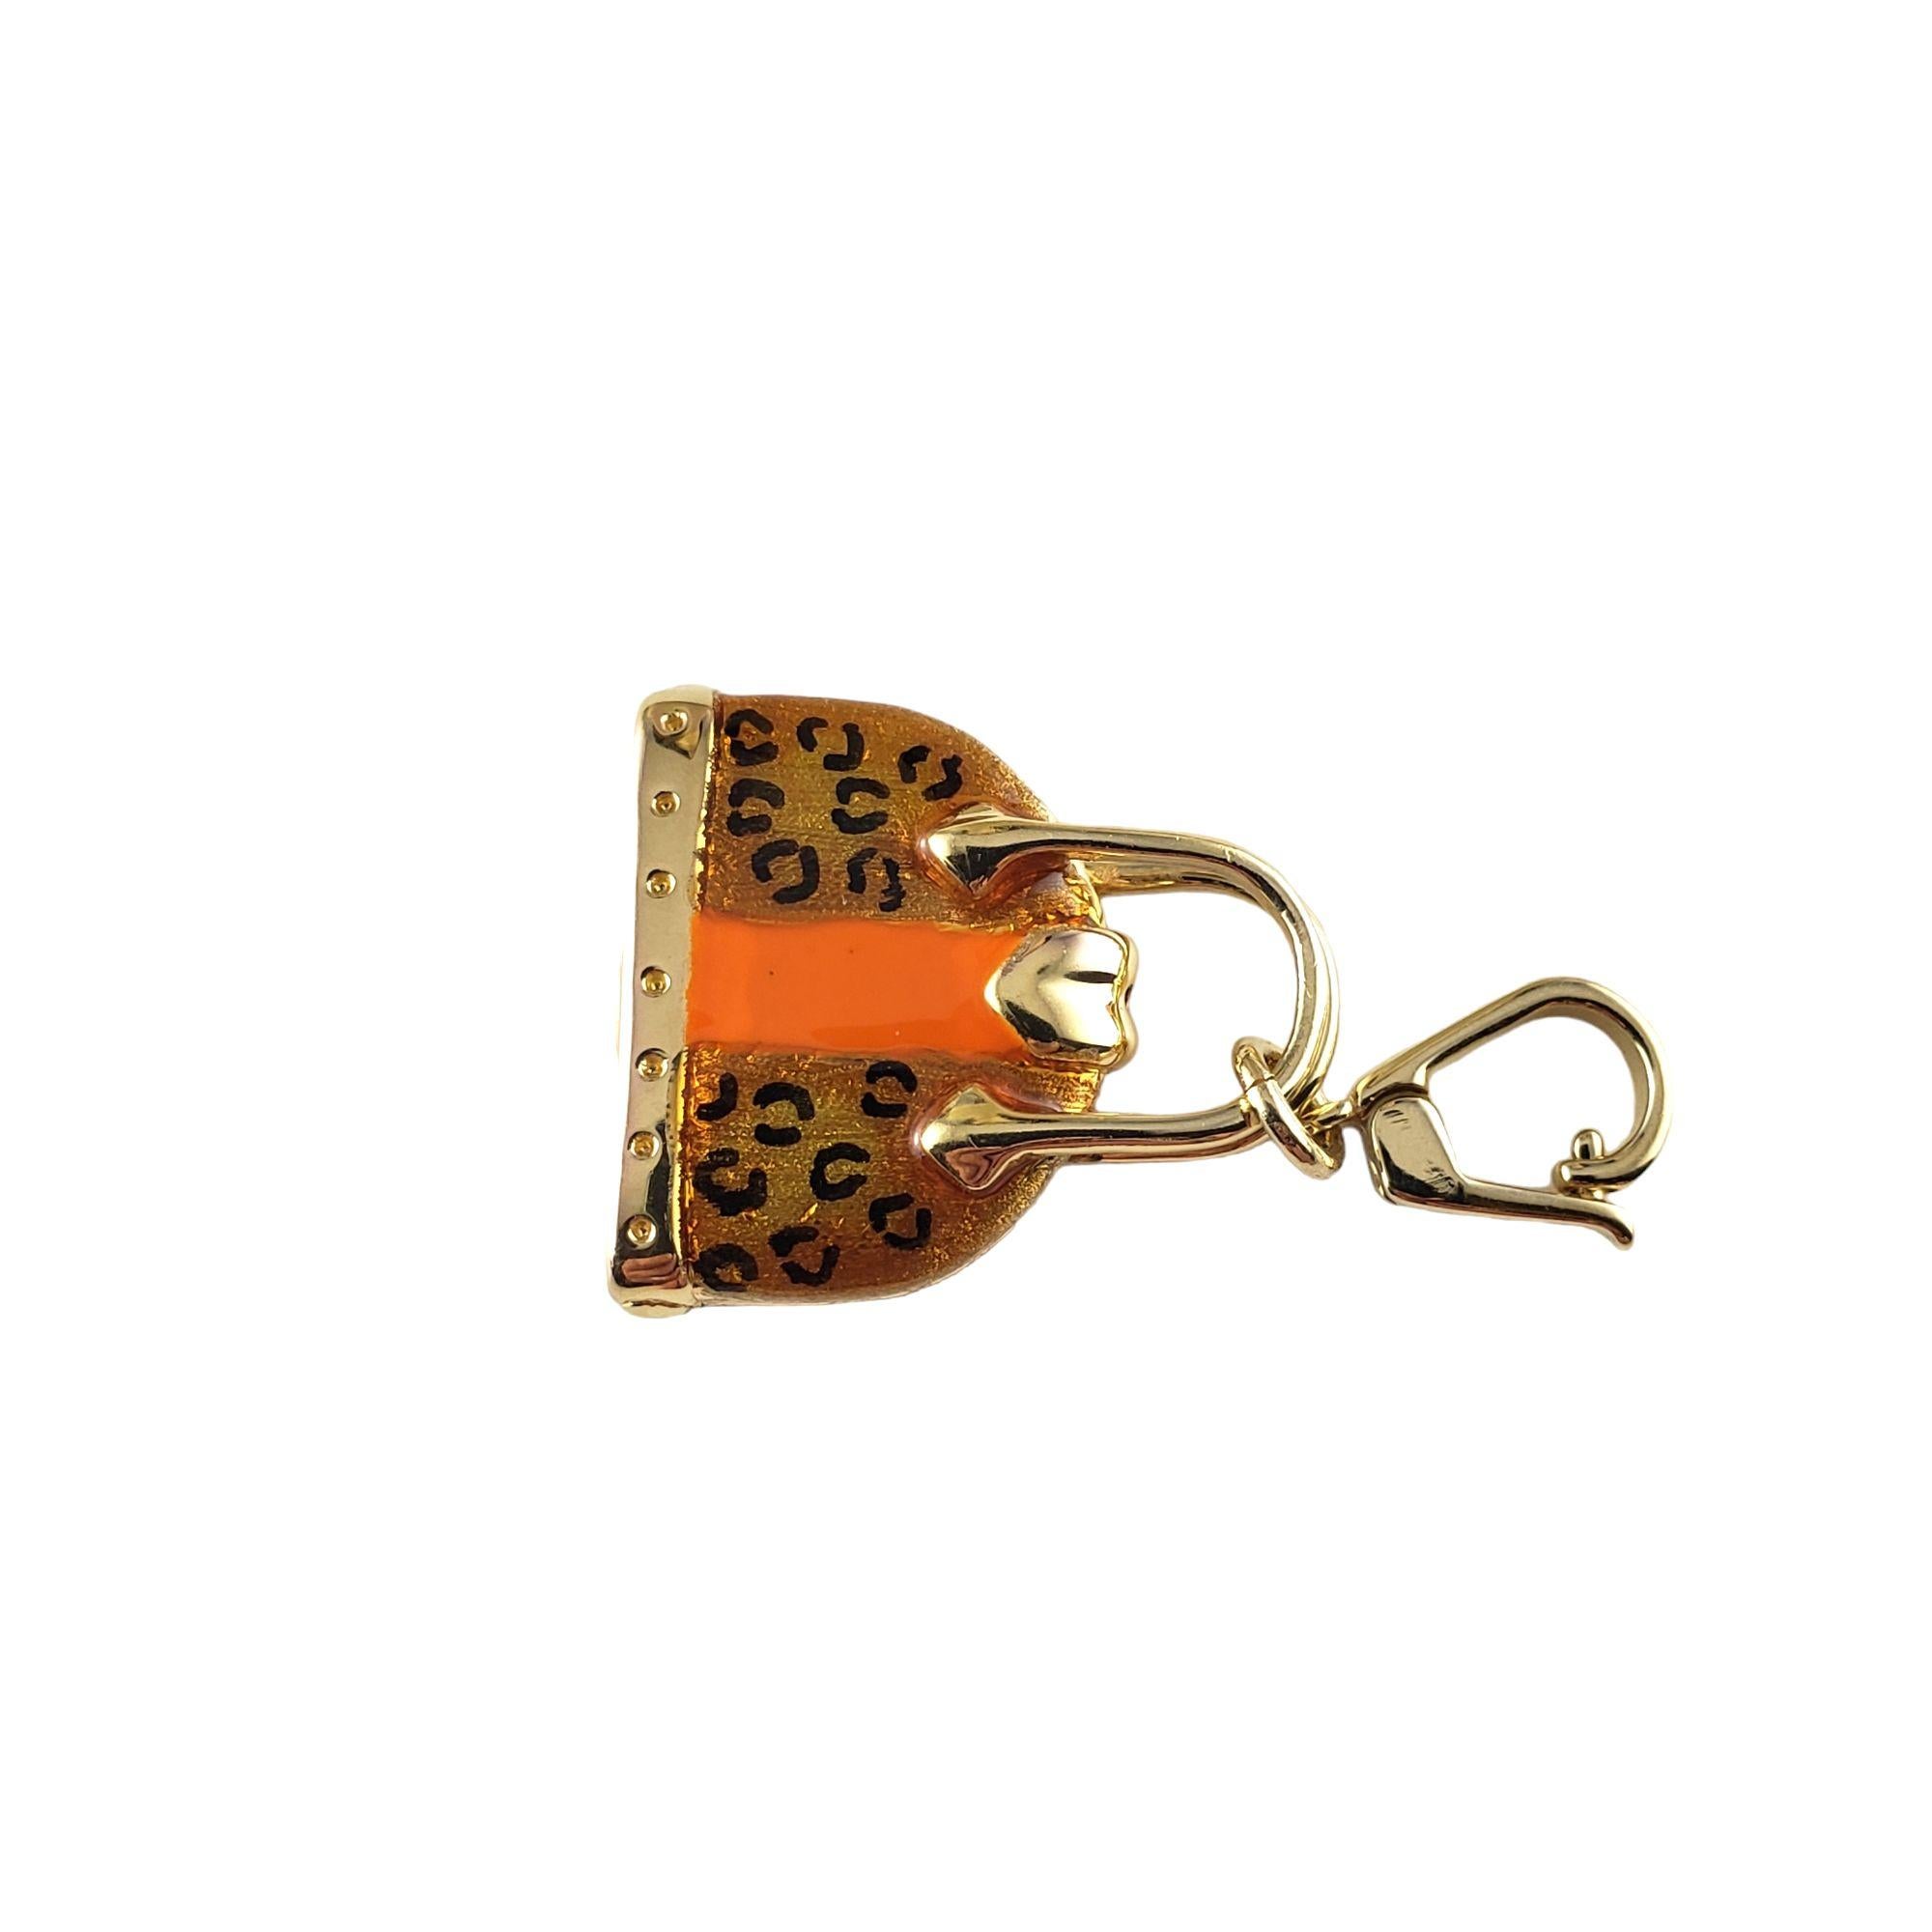 Vintage 14 Karat Gelbgold Handtasche Charm-

Perfekt für die Fashionista in Ihrem Leben!

Dieser hübsche 3D-Charme zeigt eine Miniatur-Handtasche, die in wunderschön detailliertem 14K Gelbgold und Emaille gefertigt wurde.

Größe: 22 mm x 19